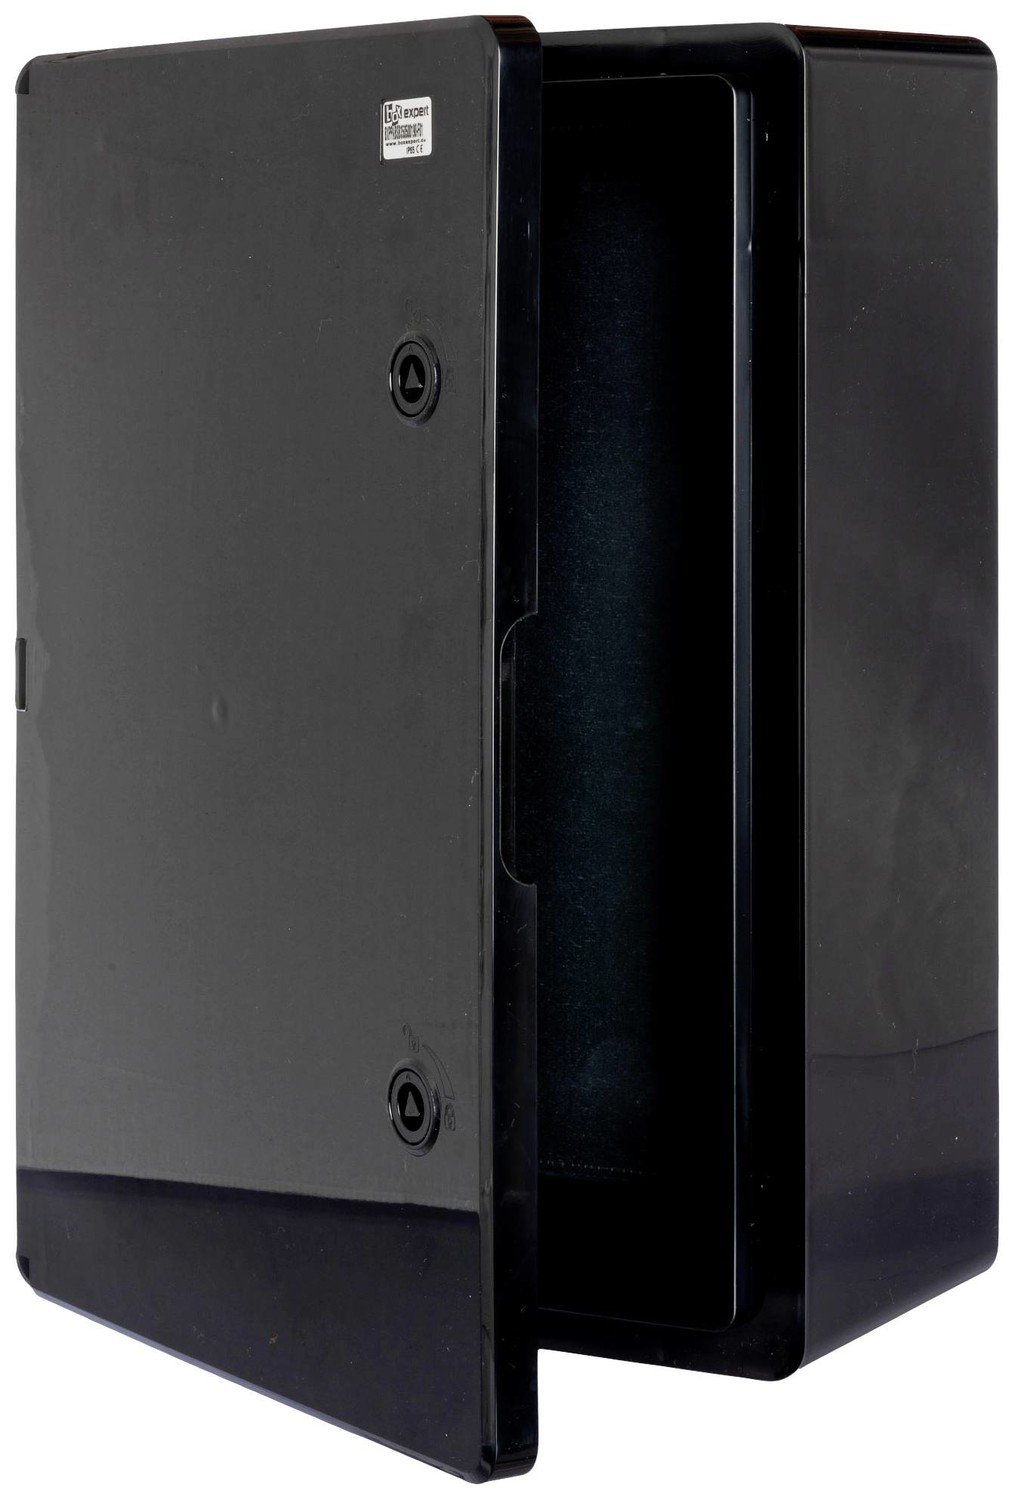 Boxexpert BXPPABSB350500190-F01 instalační rozvodnice 190 x 350 x 500 plast ABS černá 1 ks